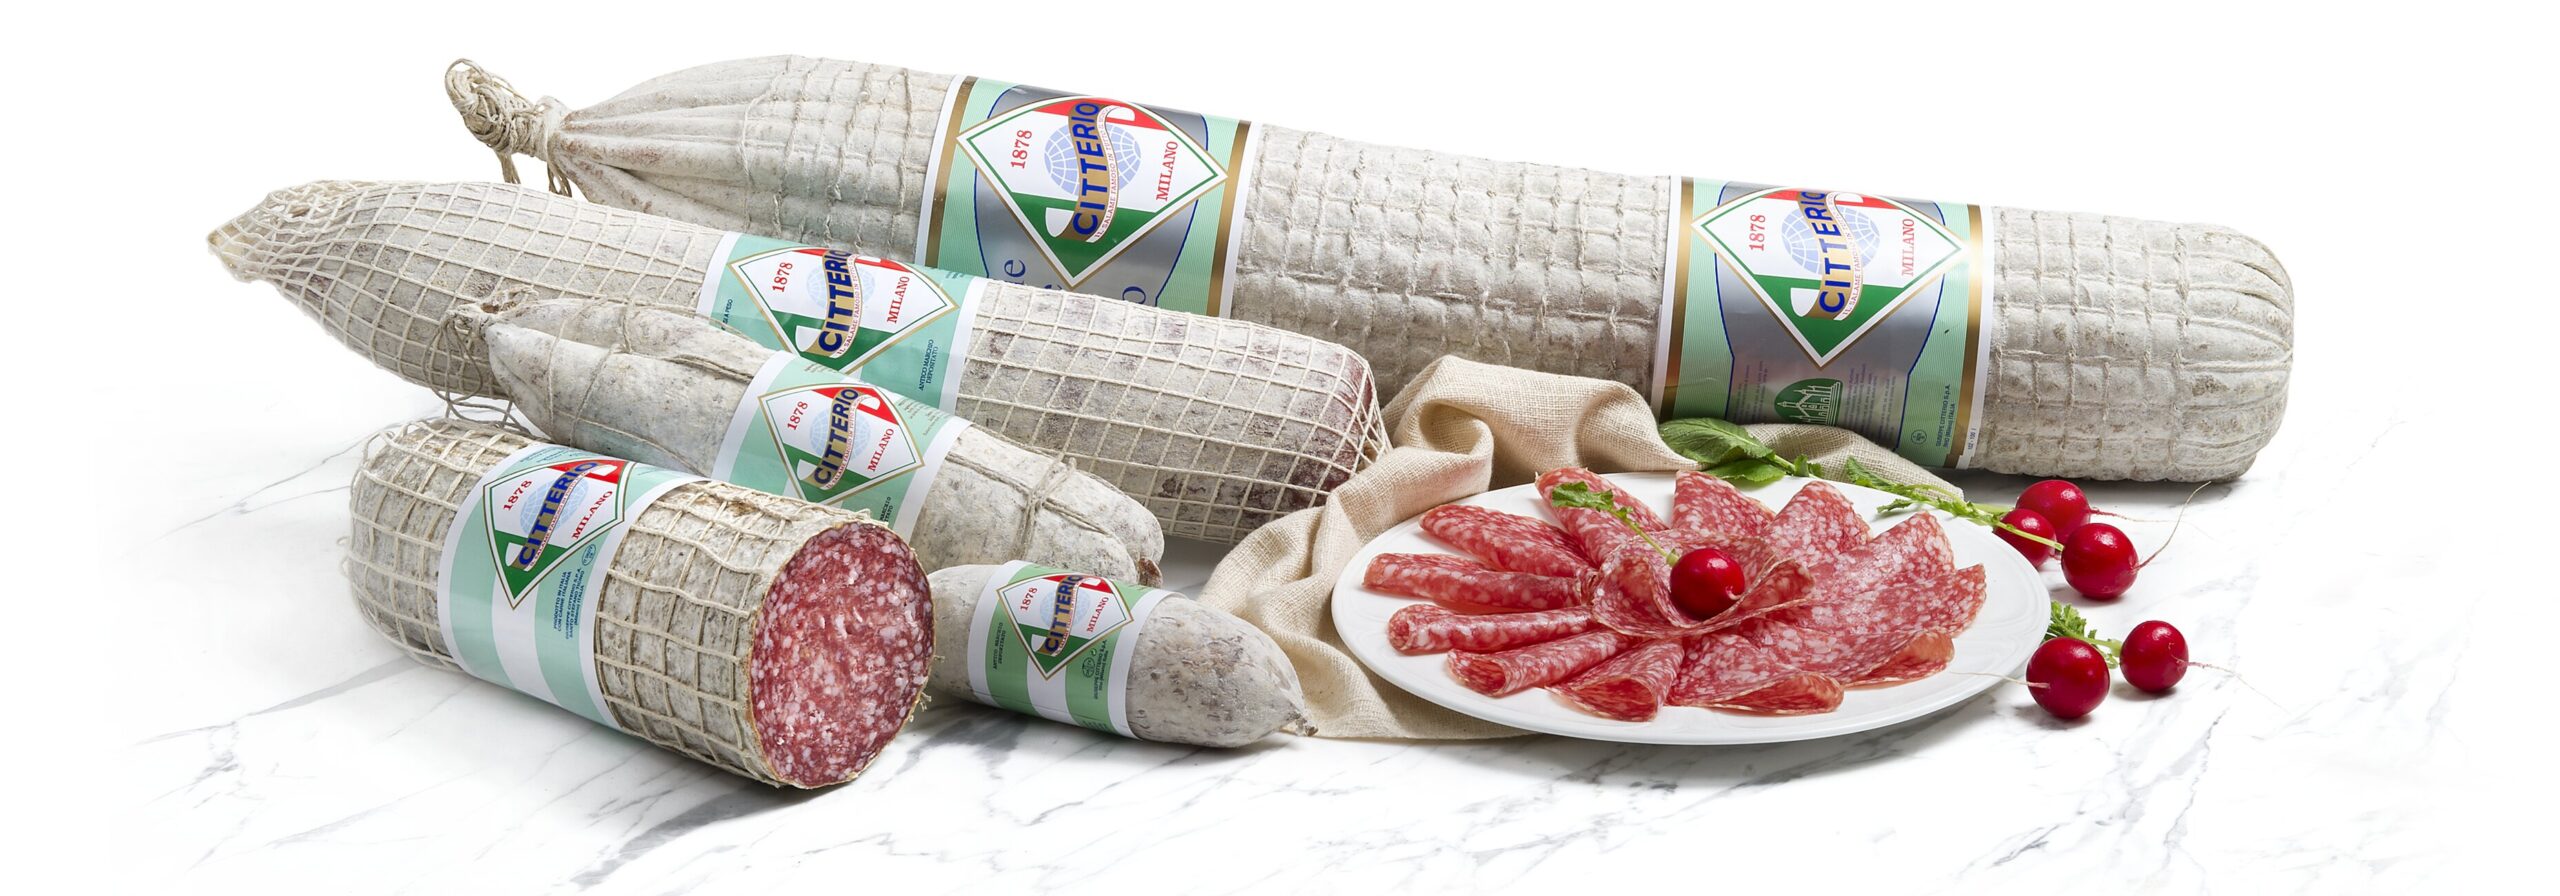 Lebensmittelimport von Citterio Produkten | Alberto Bonizzi AG